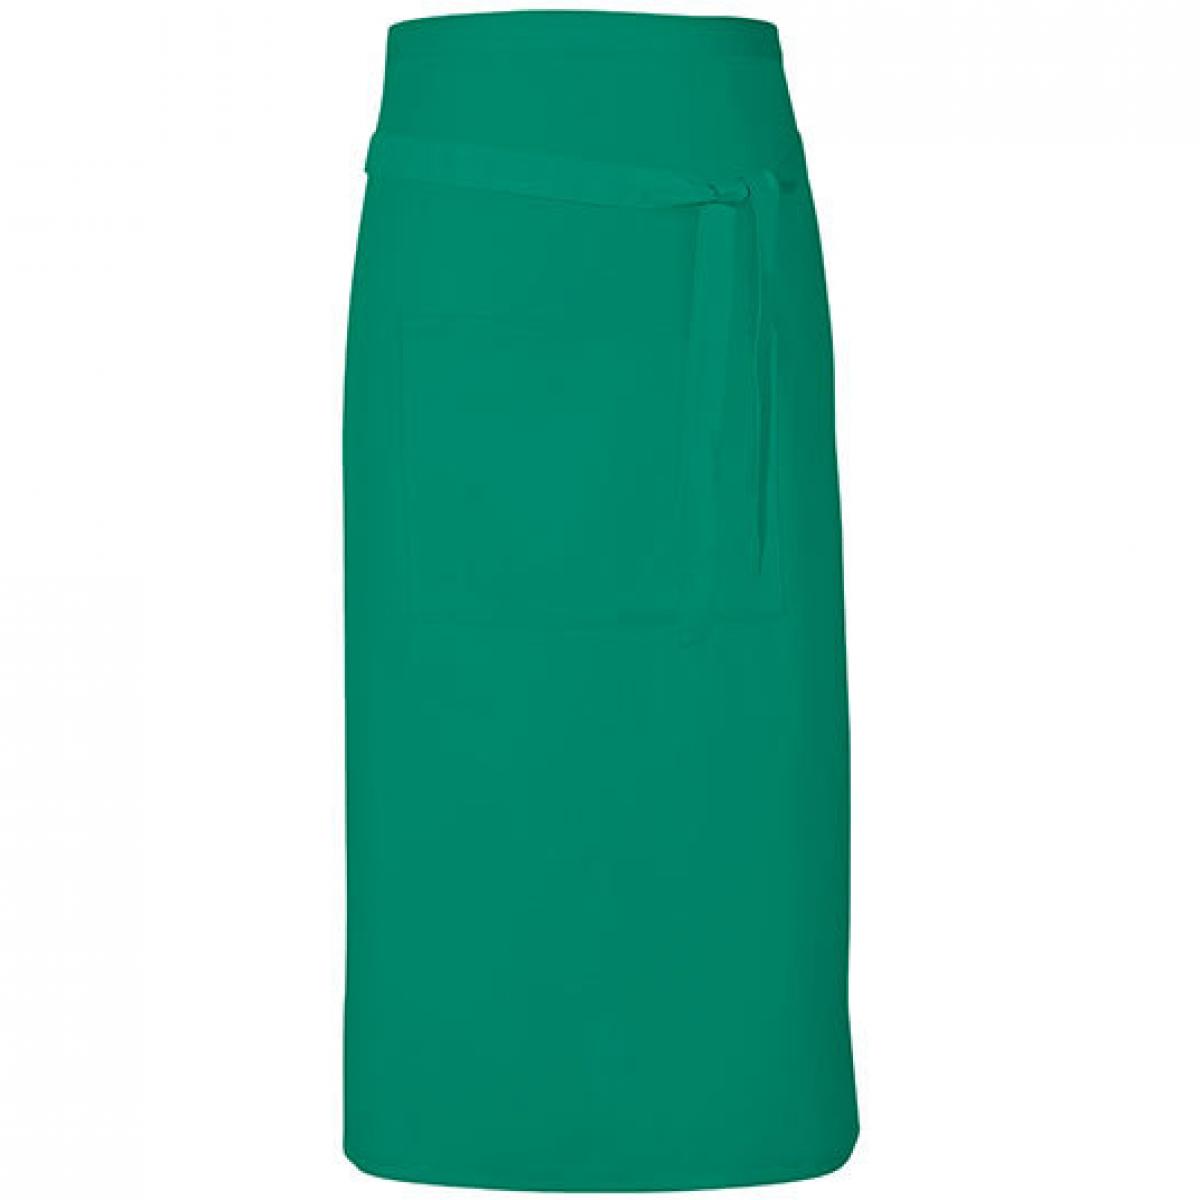 Hersteller: Link Kitchen Wear Herstellernummer: TS8090 Artikelbezeichnung: Terras Apron - 90 x 80 cm - Waschbar bis 60 °C Farbe: Emerald (ca. Pantone 341)